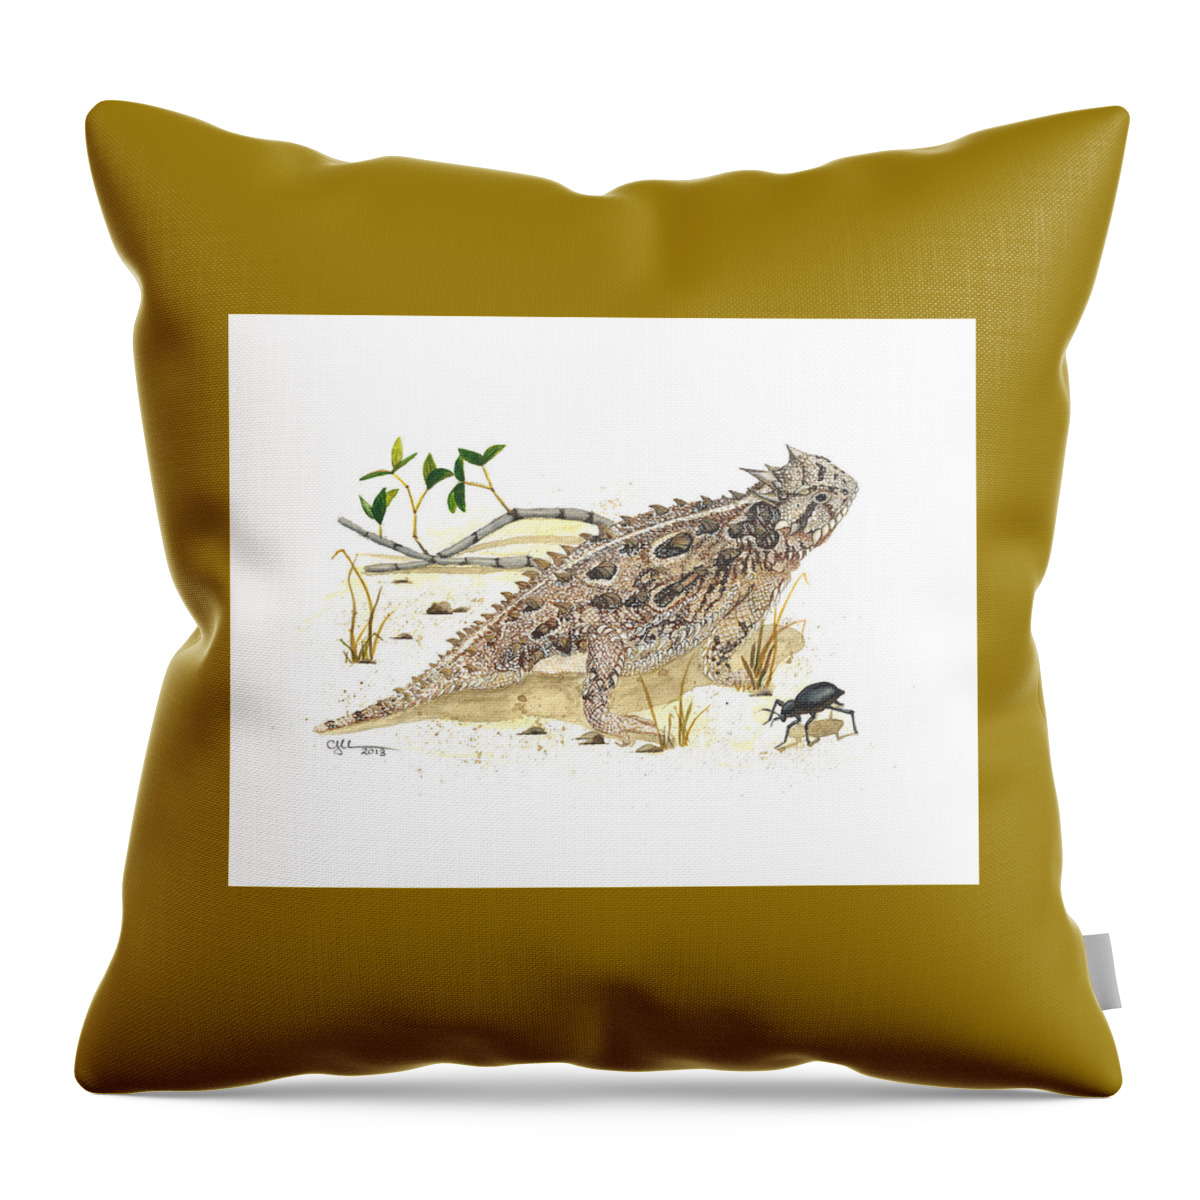 Texas Horned Lizard Throw Pillow featuring the painting Texas horned lizard by Cindy Hitchcock